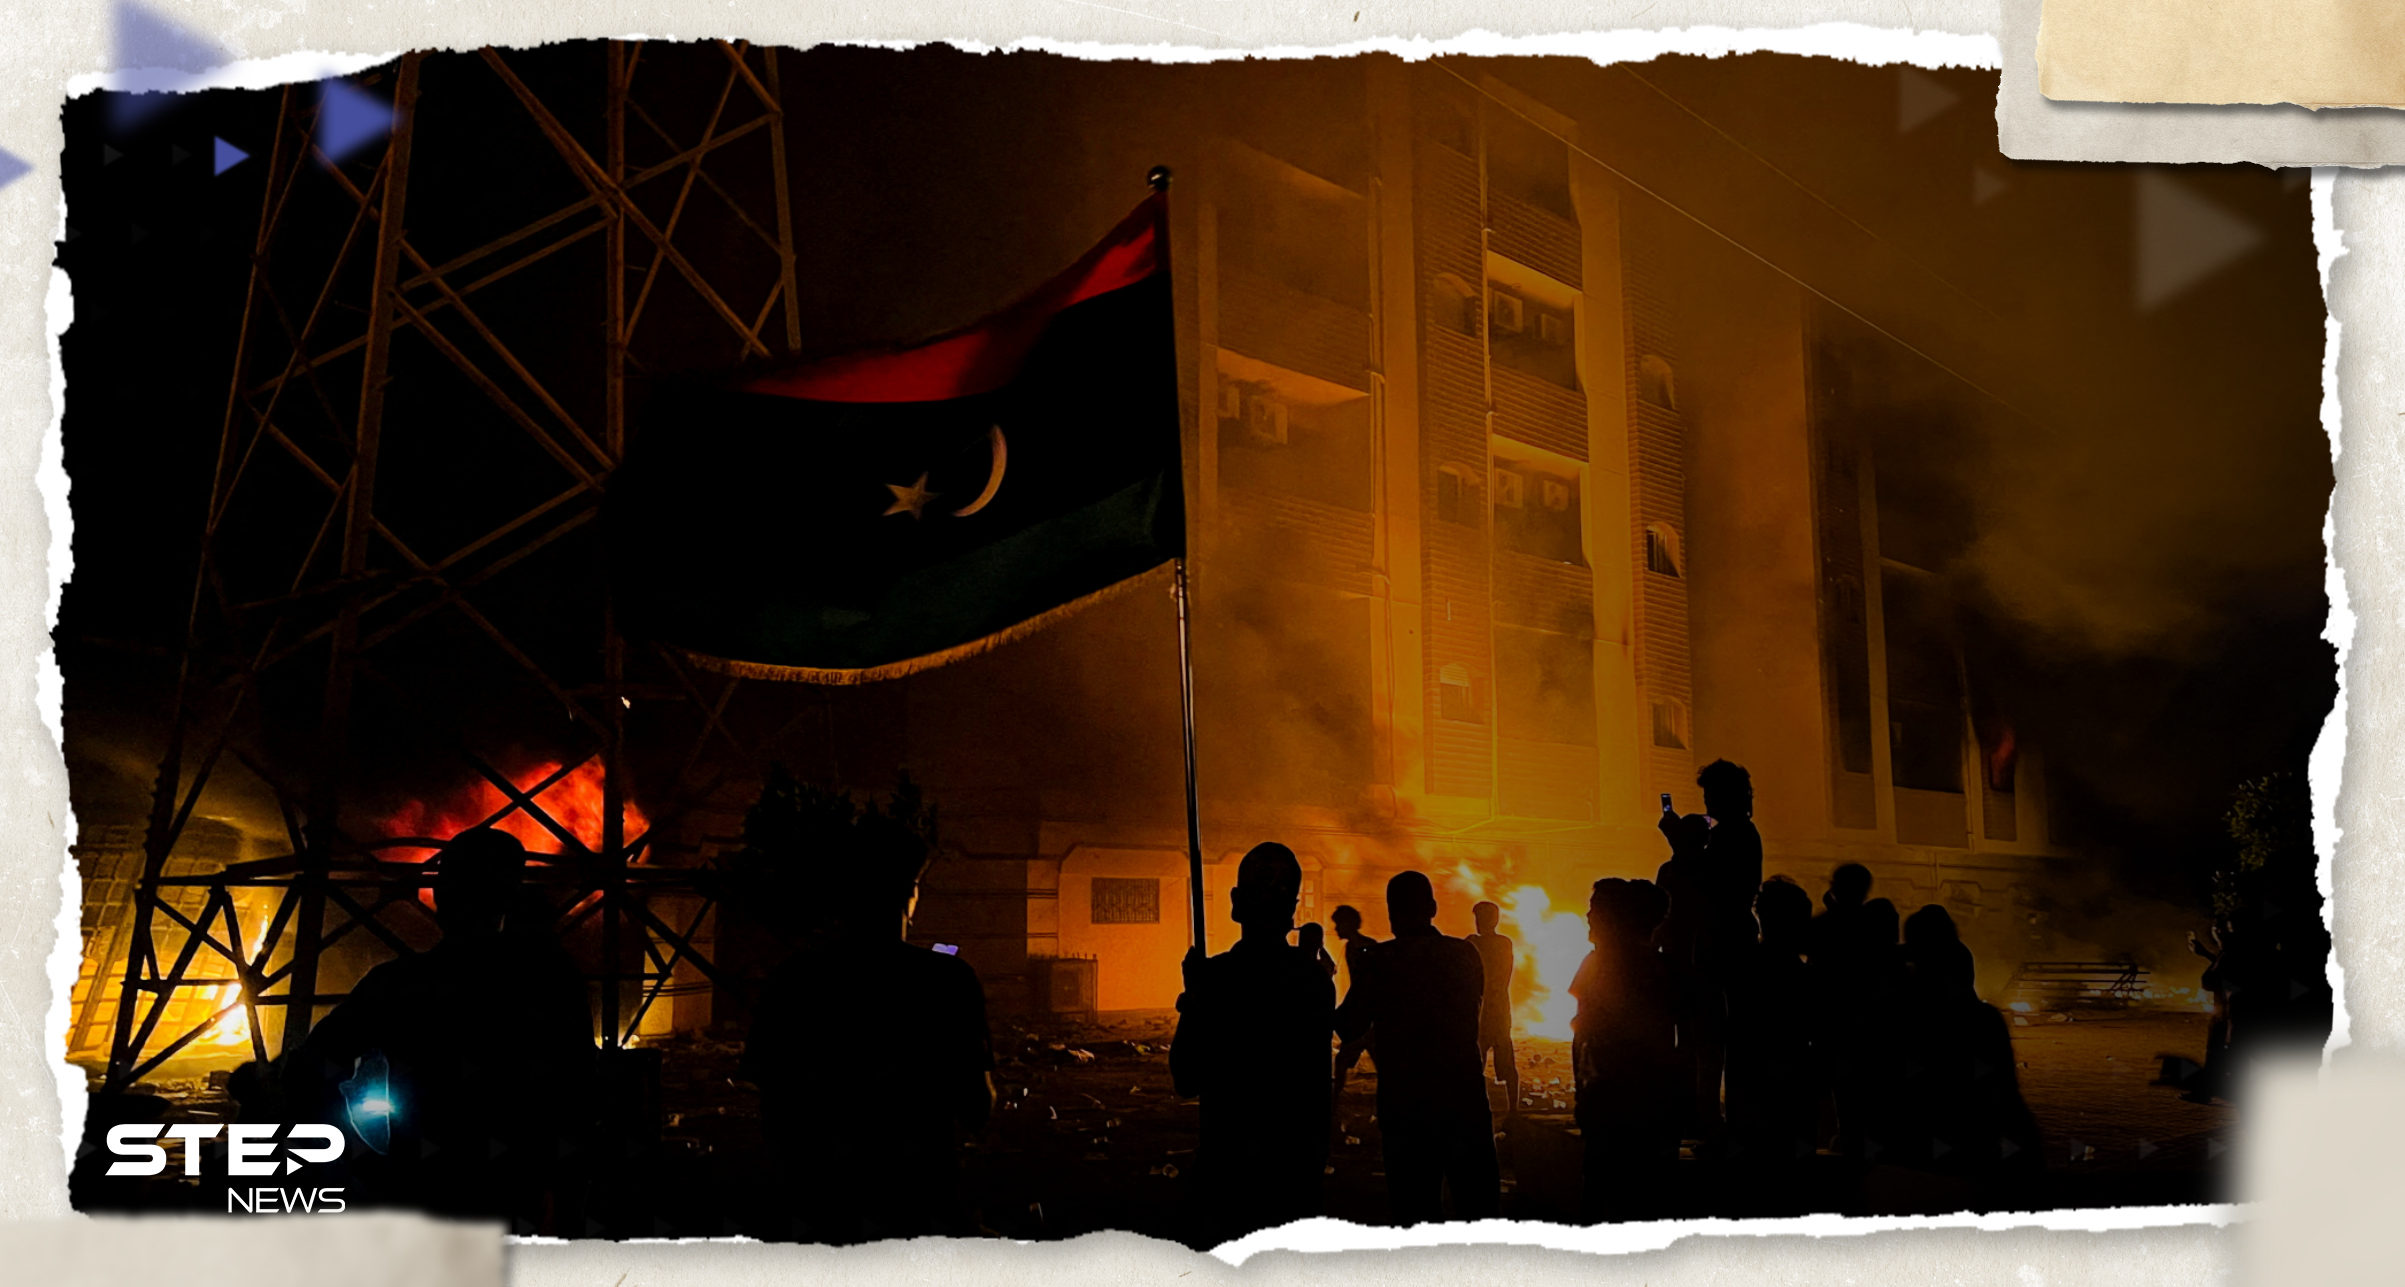 بعد الإعلان الإسرائيلي.. ليبيا تشتعل غضباً والحكومة تتدخل وتتخذ إجراءات "عقابية"